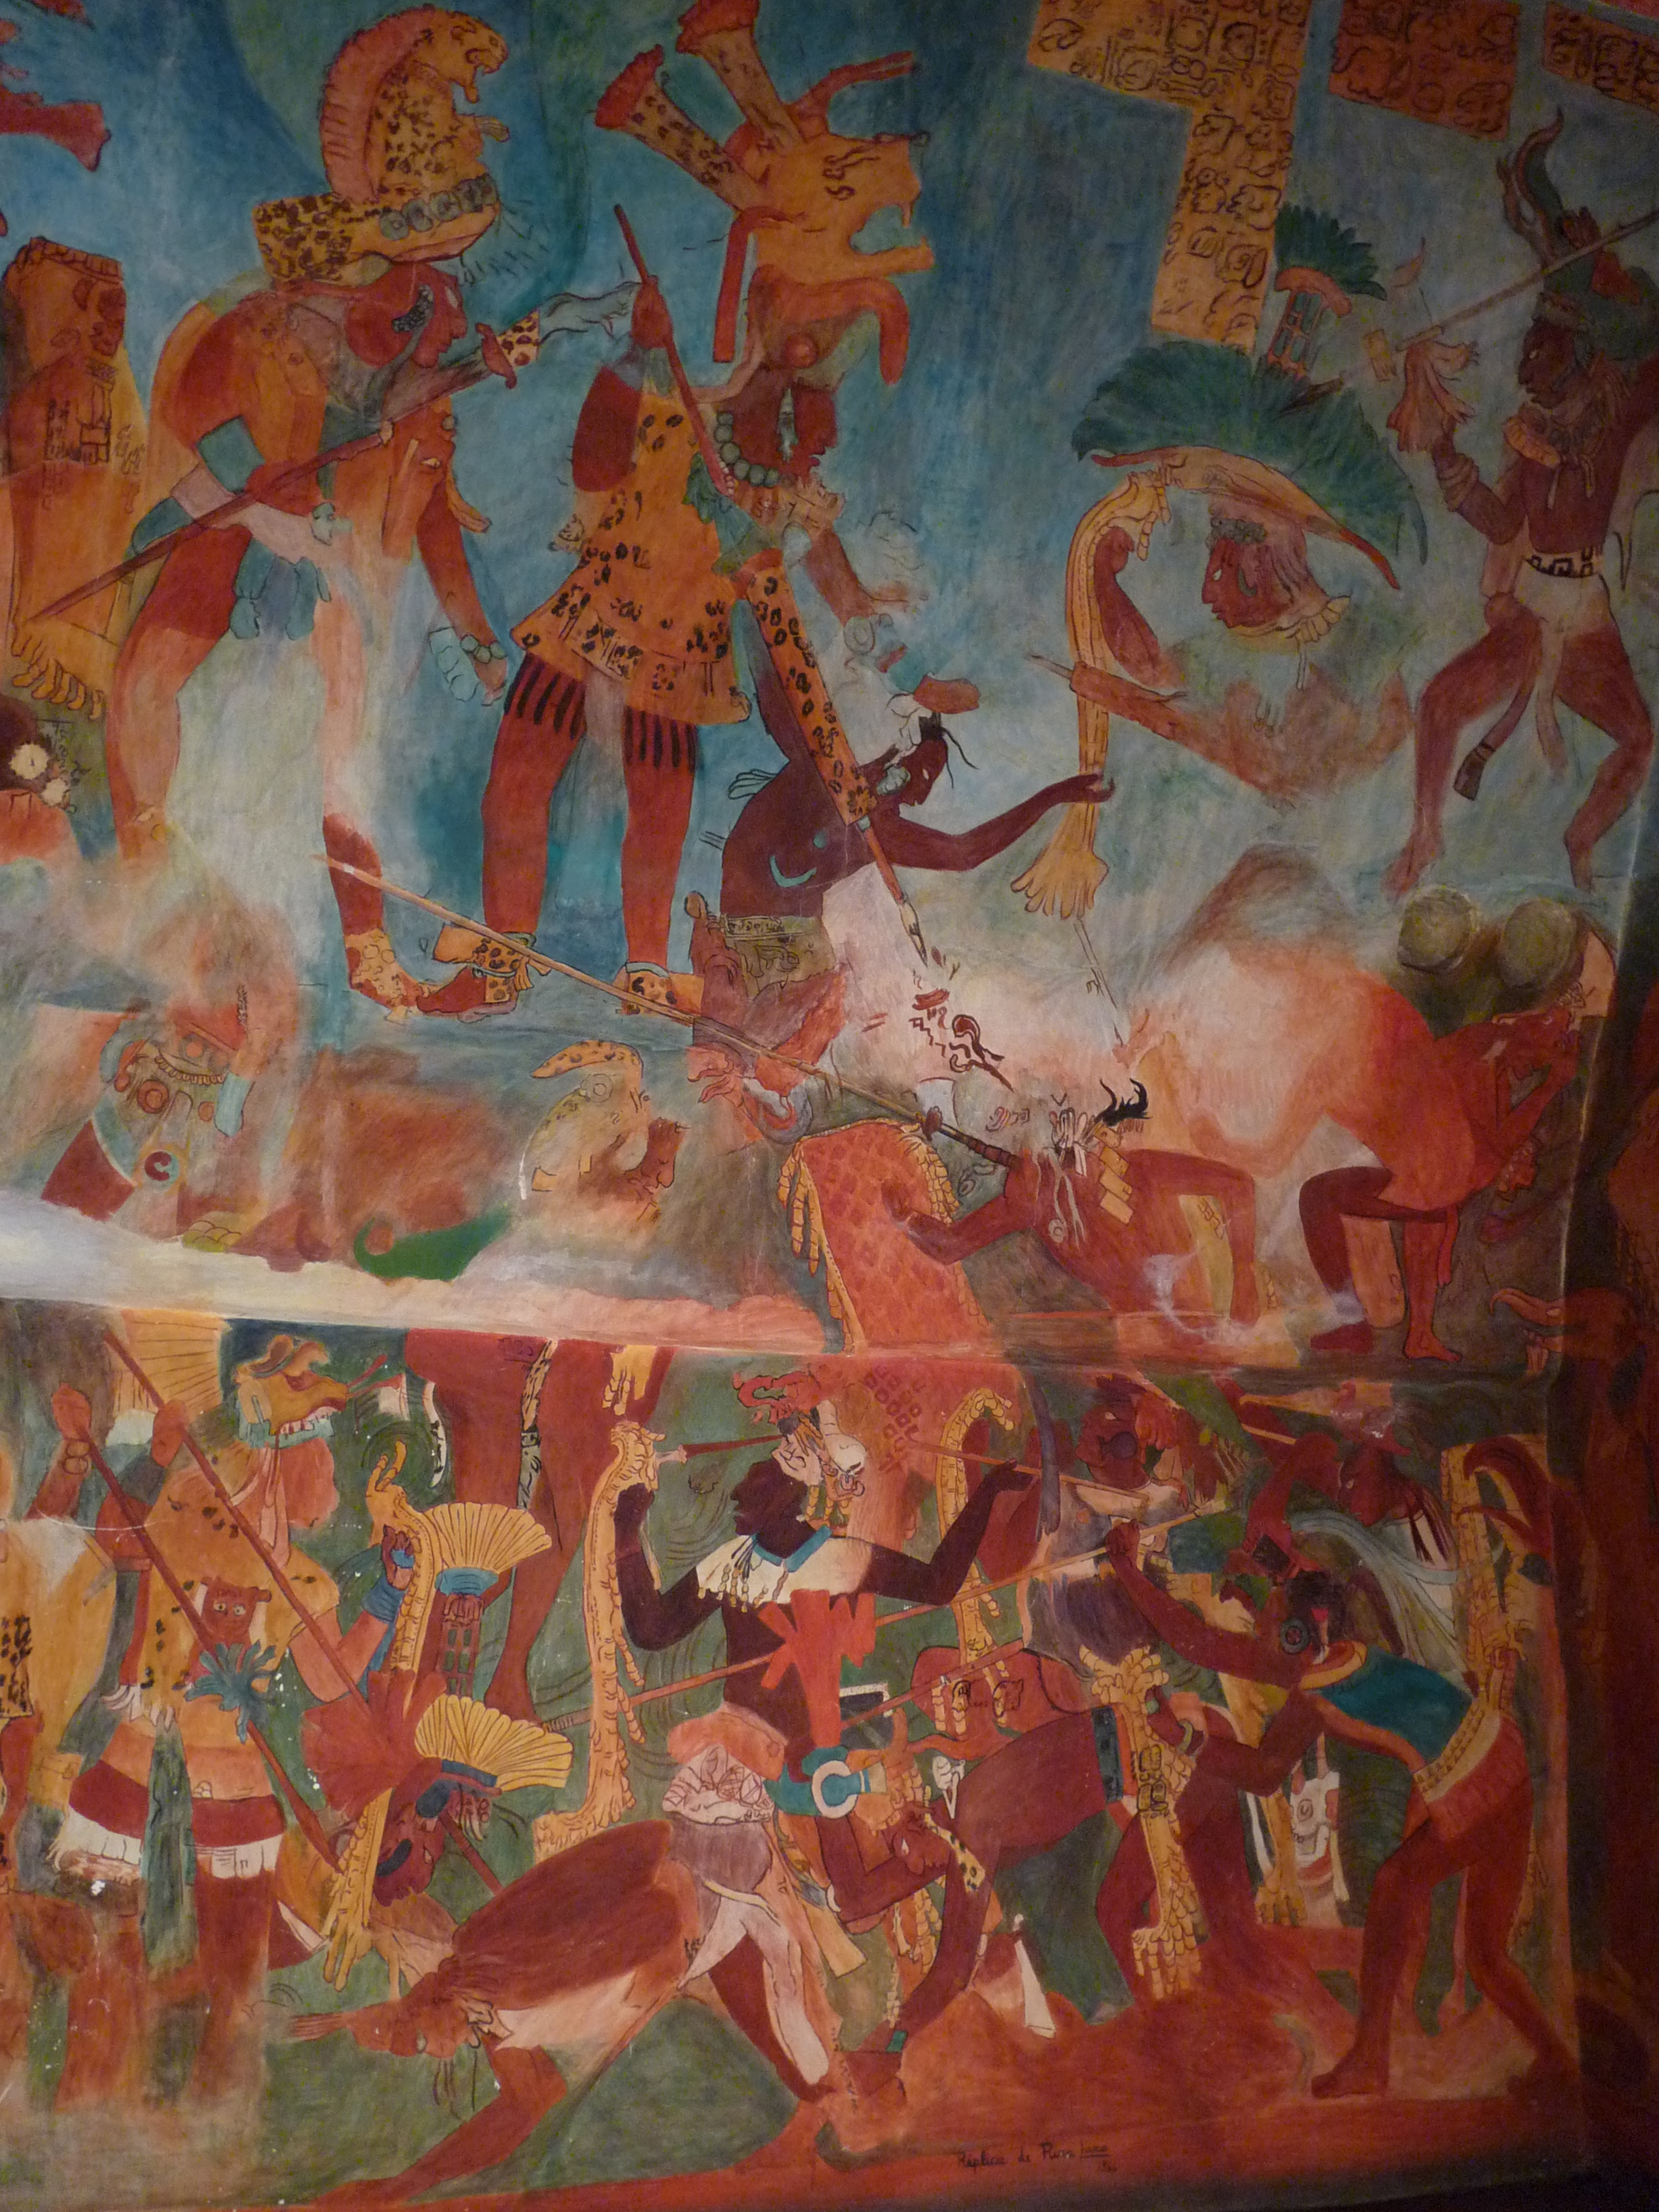 La imagen muestra varios personajes de piel oscura y vestimentas tradicionales con escudos y lanzas, que están luchando